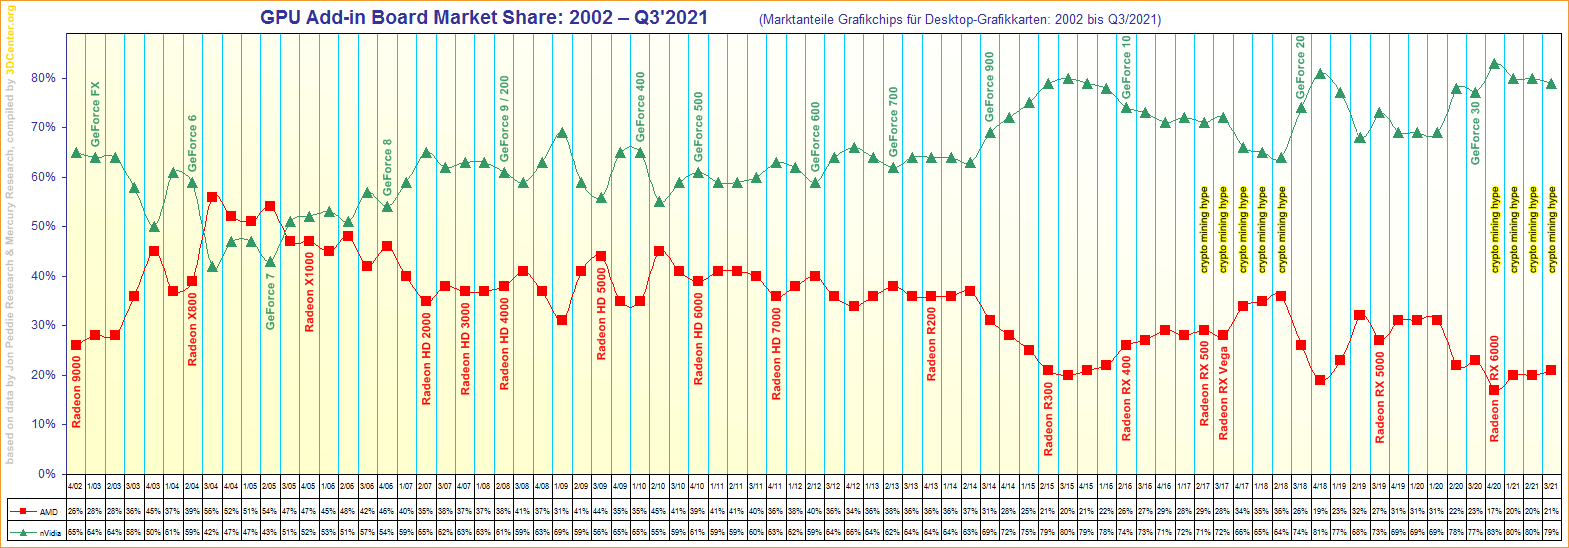 Marktanteile Grafikchips für Desktop-Grafikkarten von 2002 bis Q3/2021